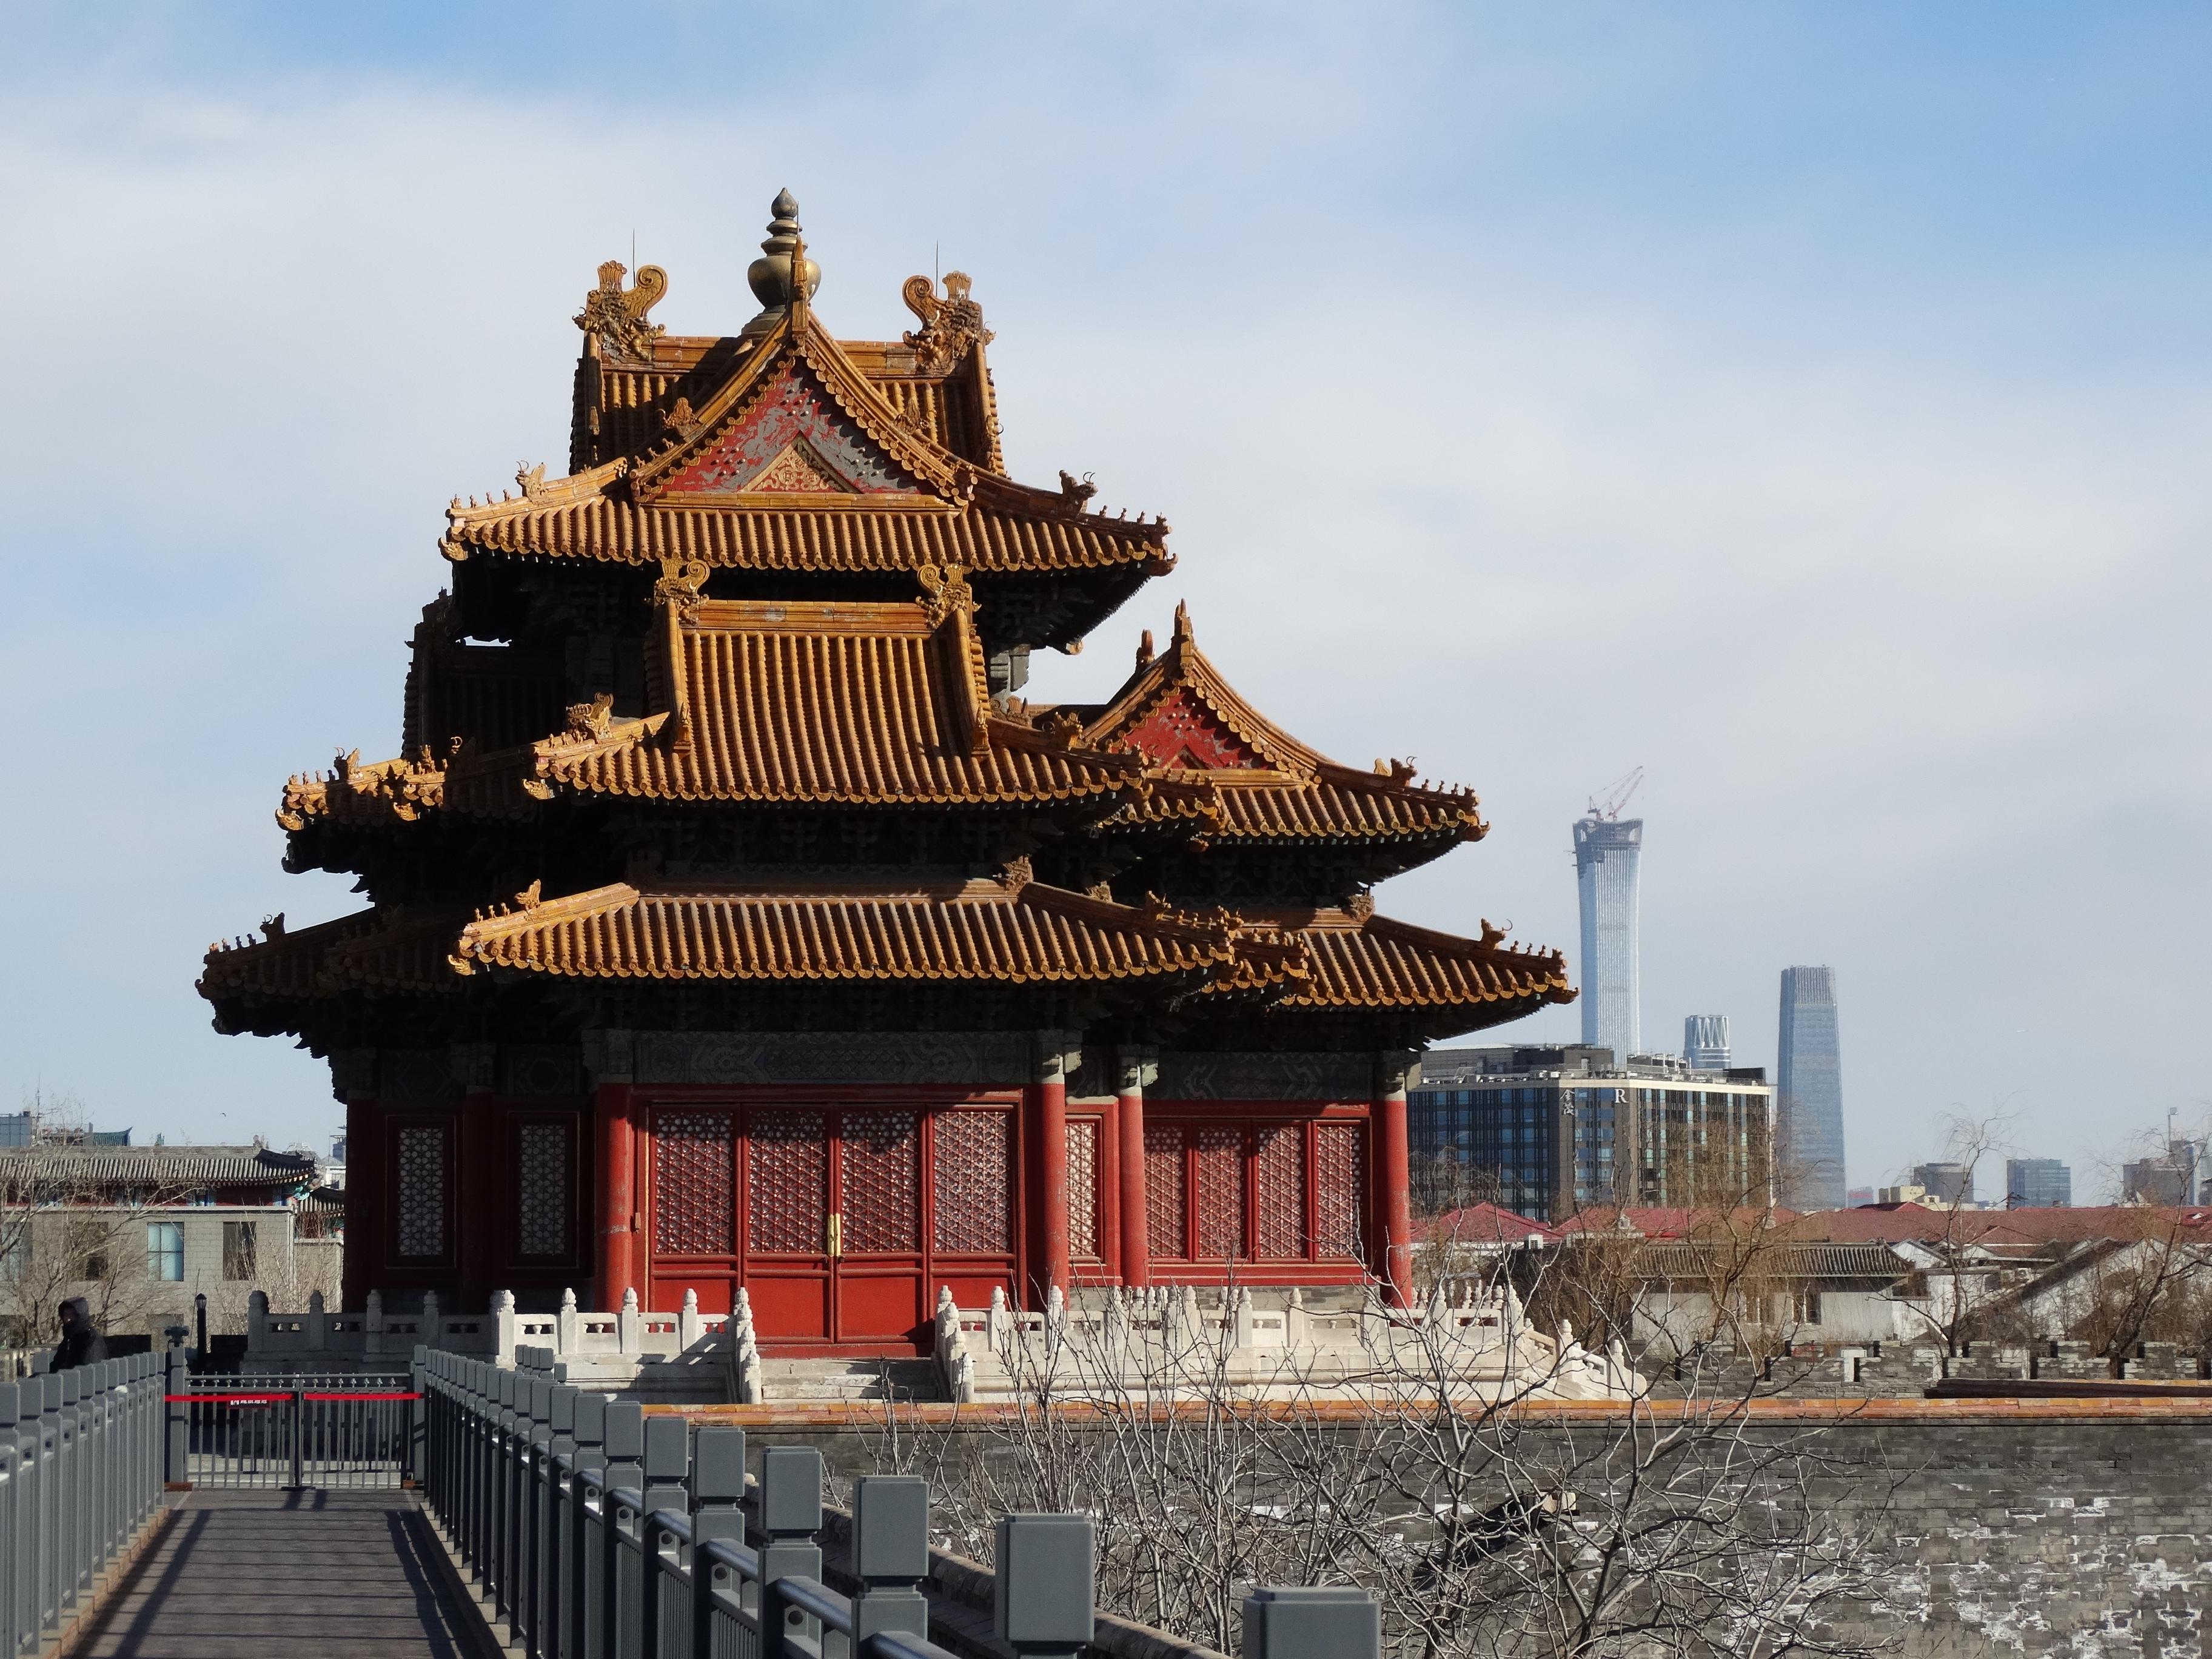 1/ 12 故宫是中国明清两代的皇家宫殿,旧称为紫禁城,位于北京中轴线的